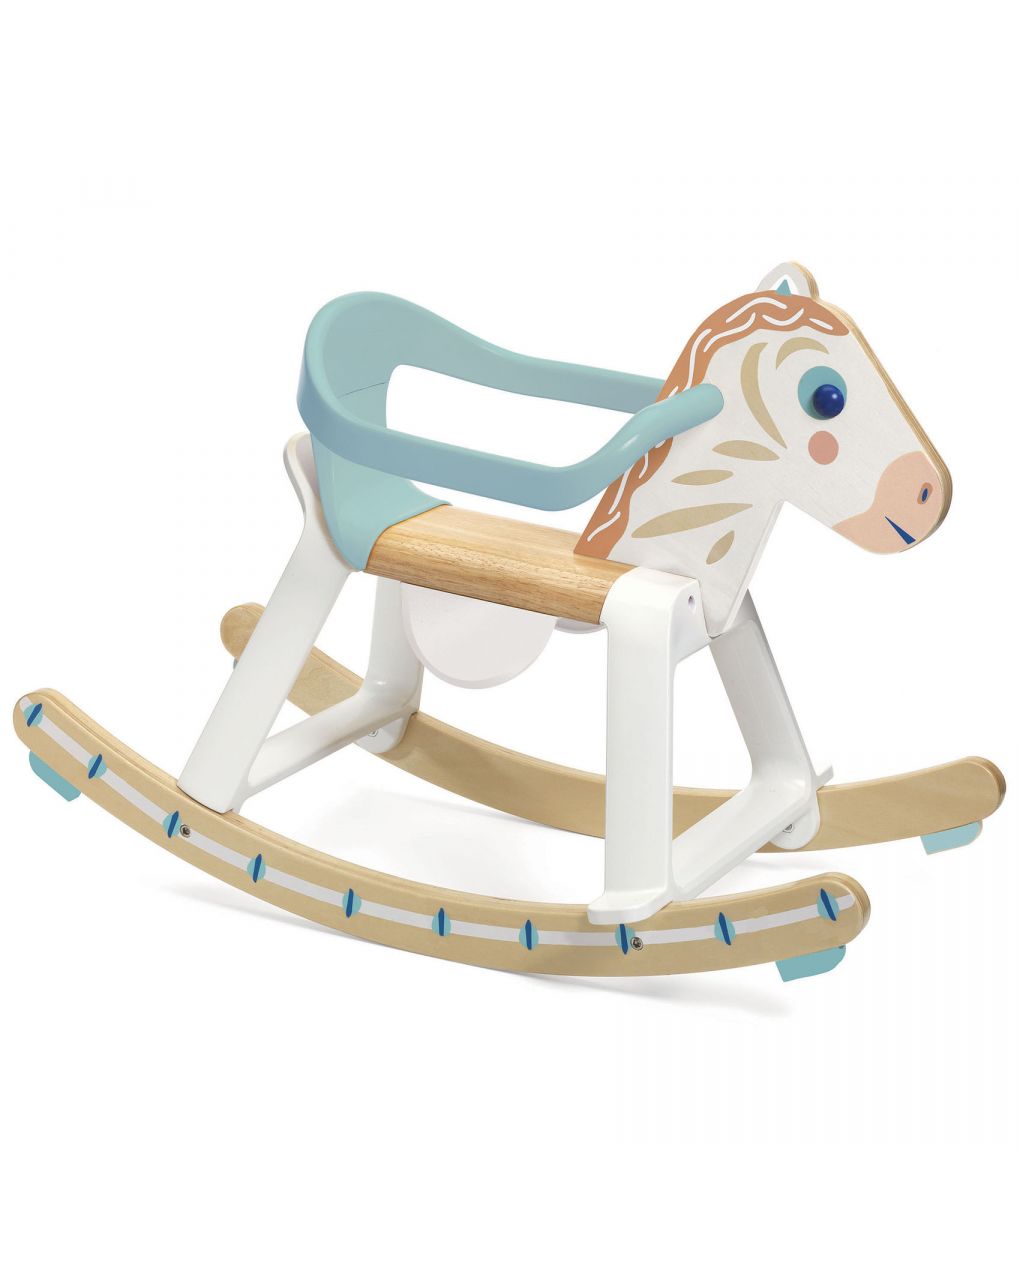 Cavallo a dondolo babycavali in legno e plastica - djeco